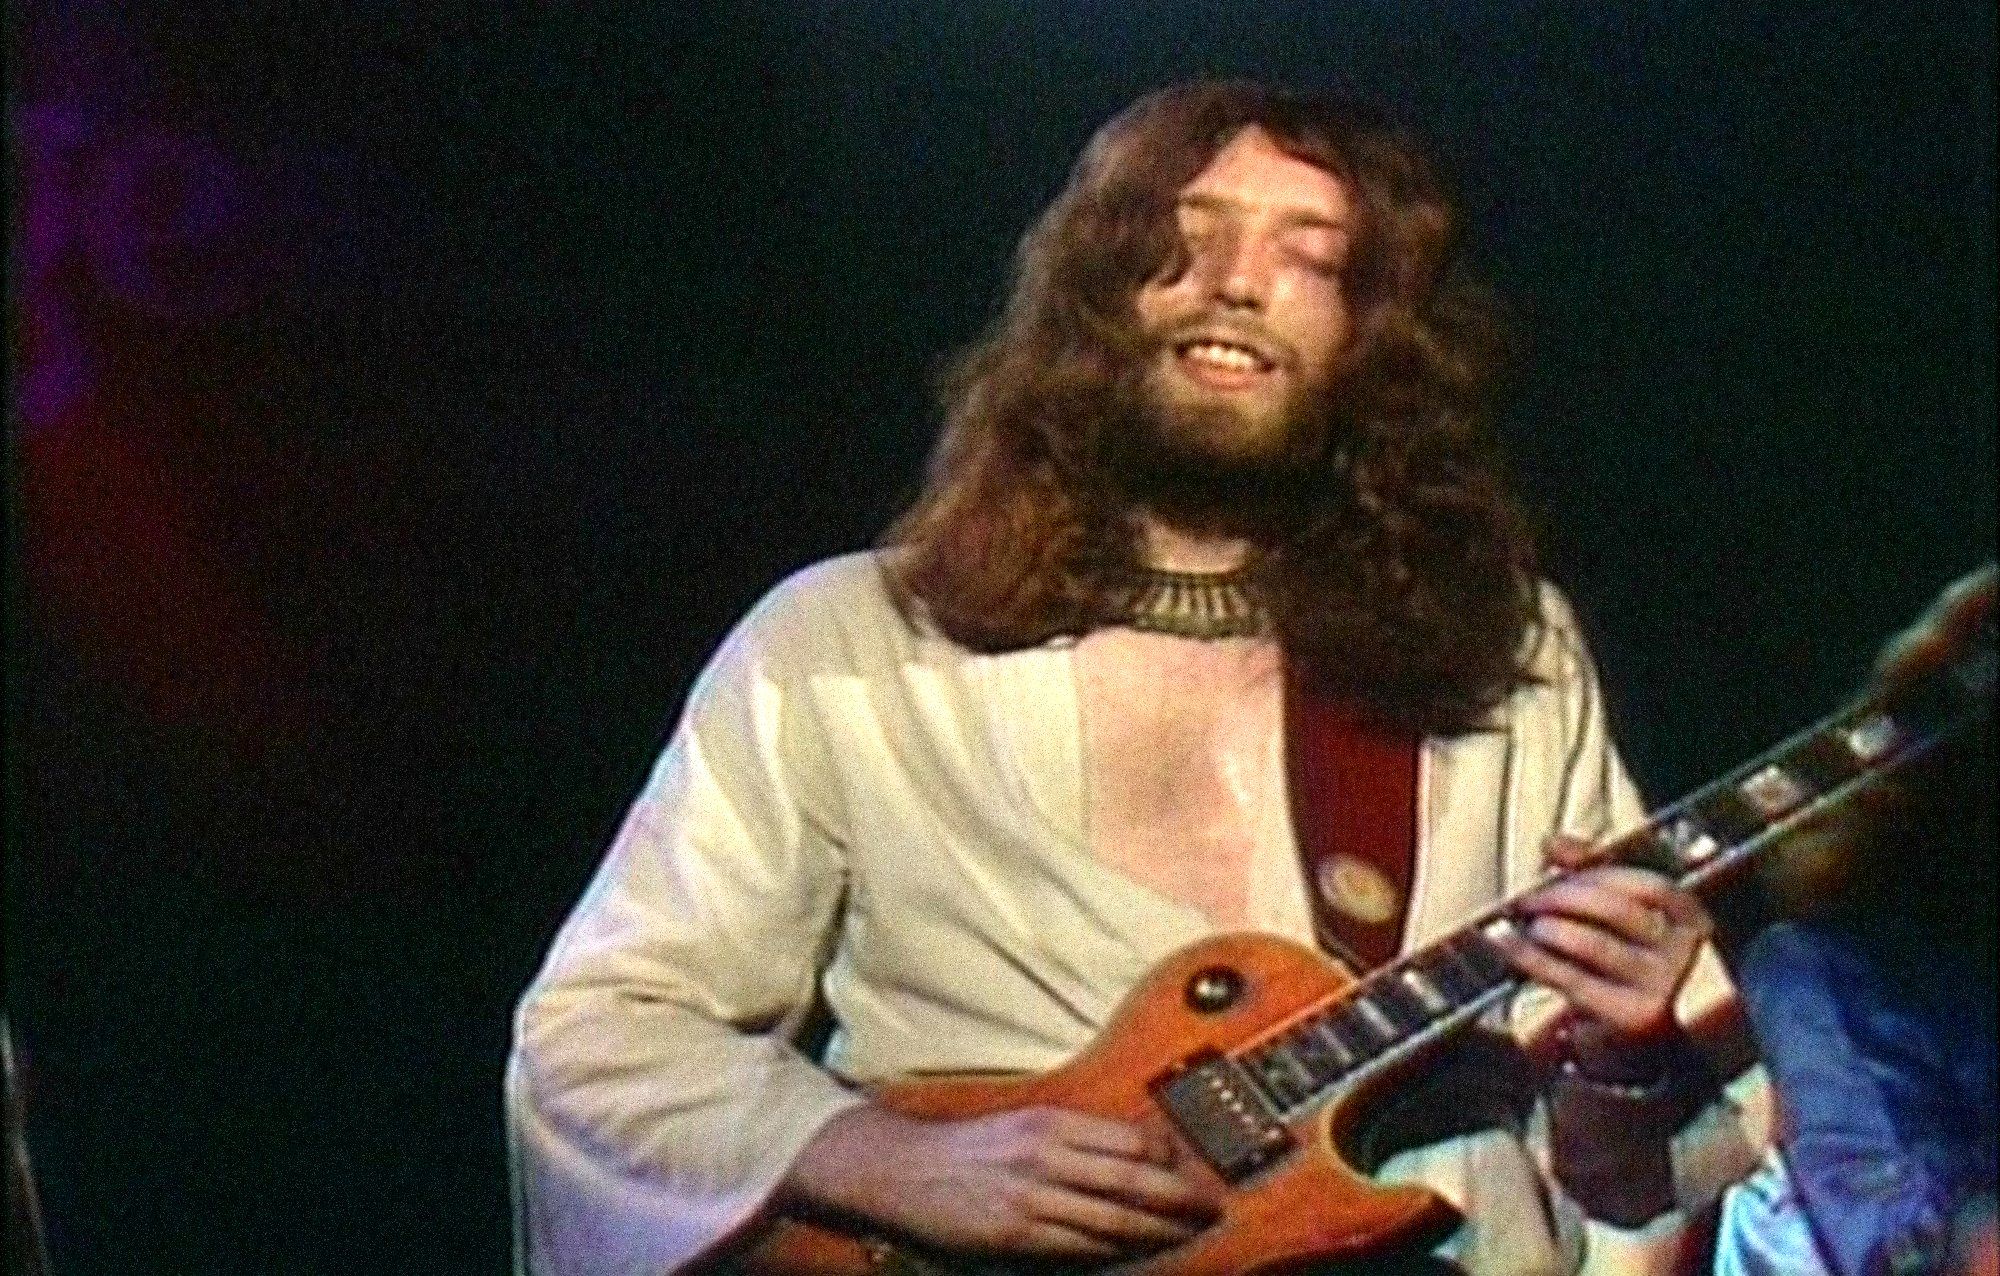 guitars, Jesus - desktop wallpaper